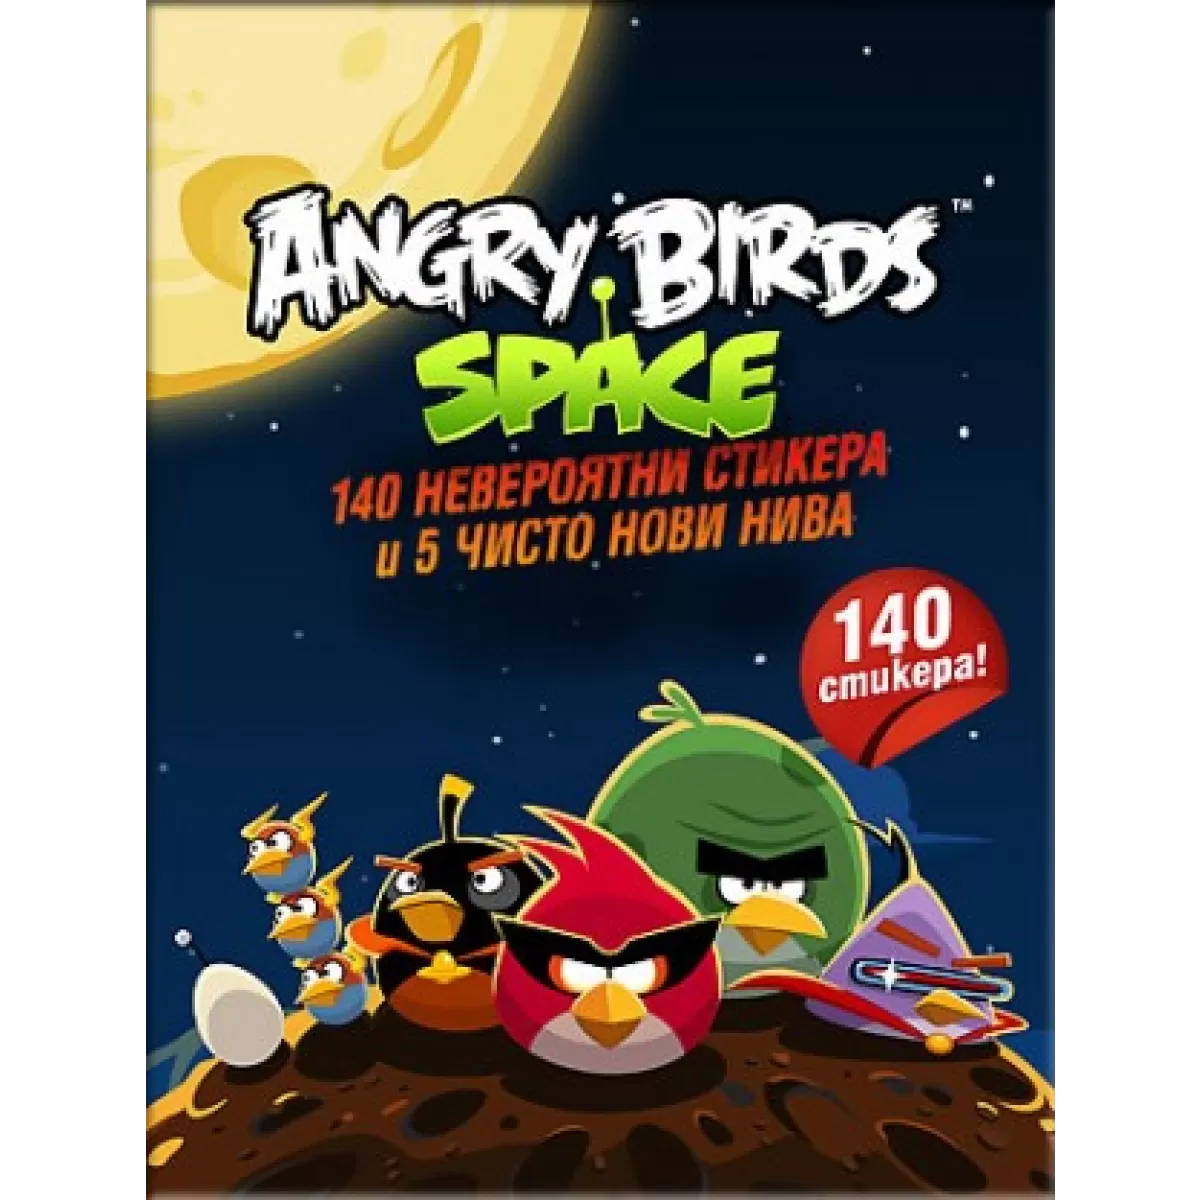 Angry Birds Space – 140 стикерa и 5 чисто нови нива